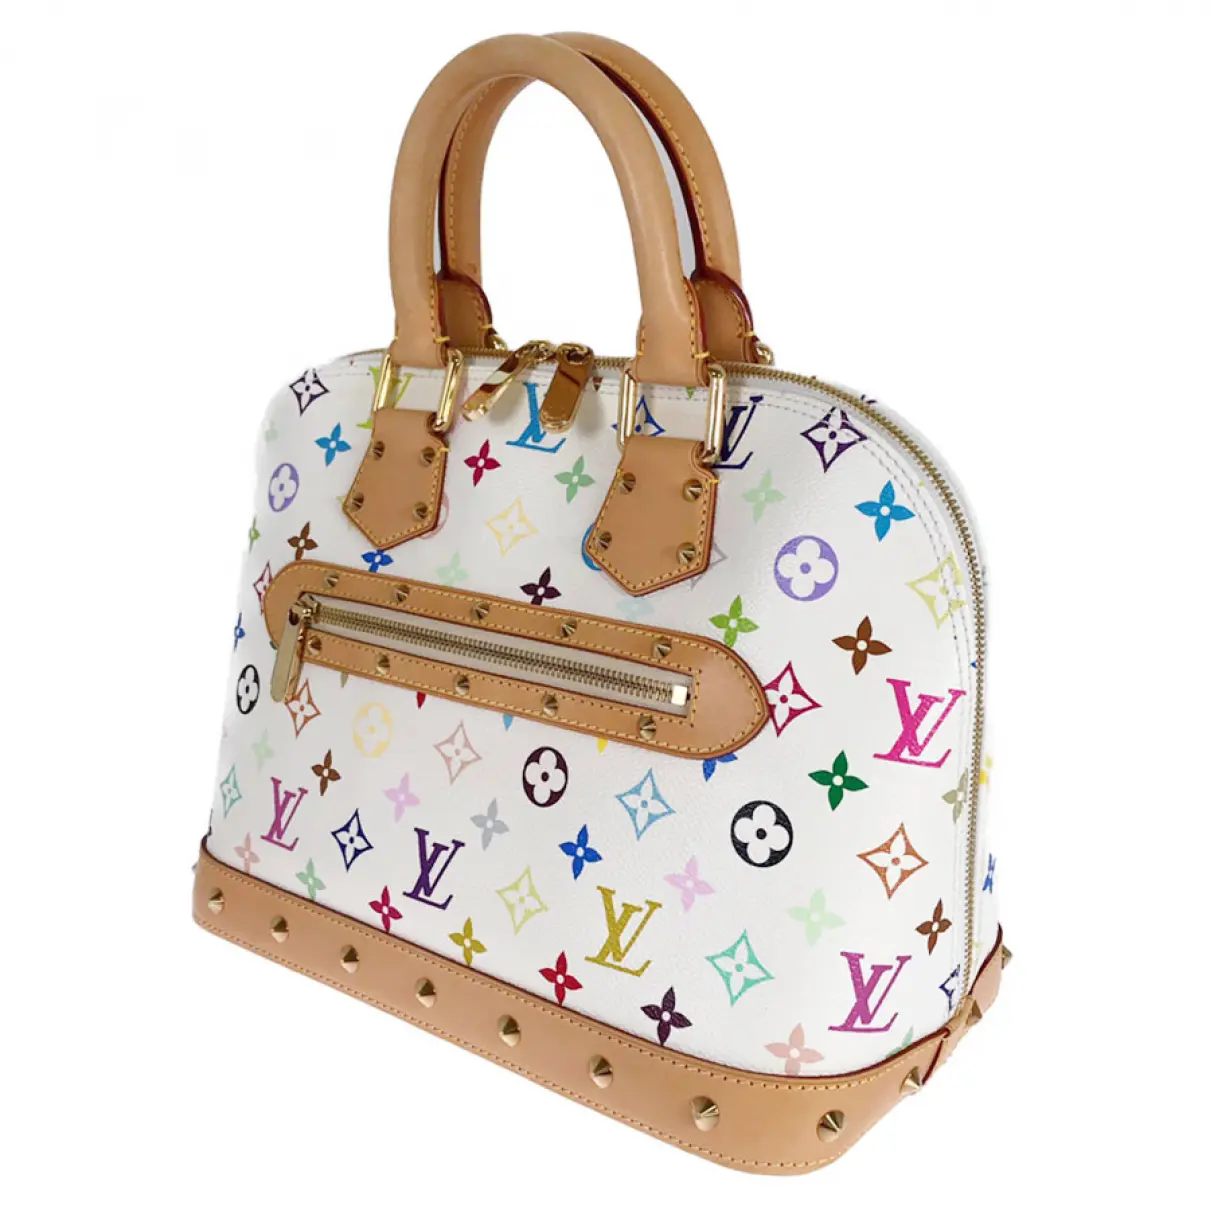 Buy Louis Vuitton Alma cloth handbag online